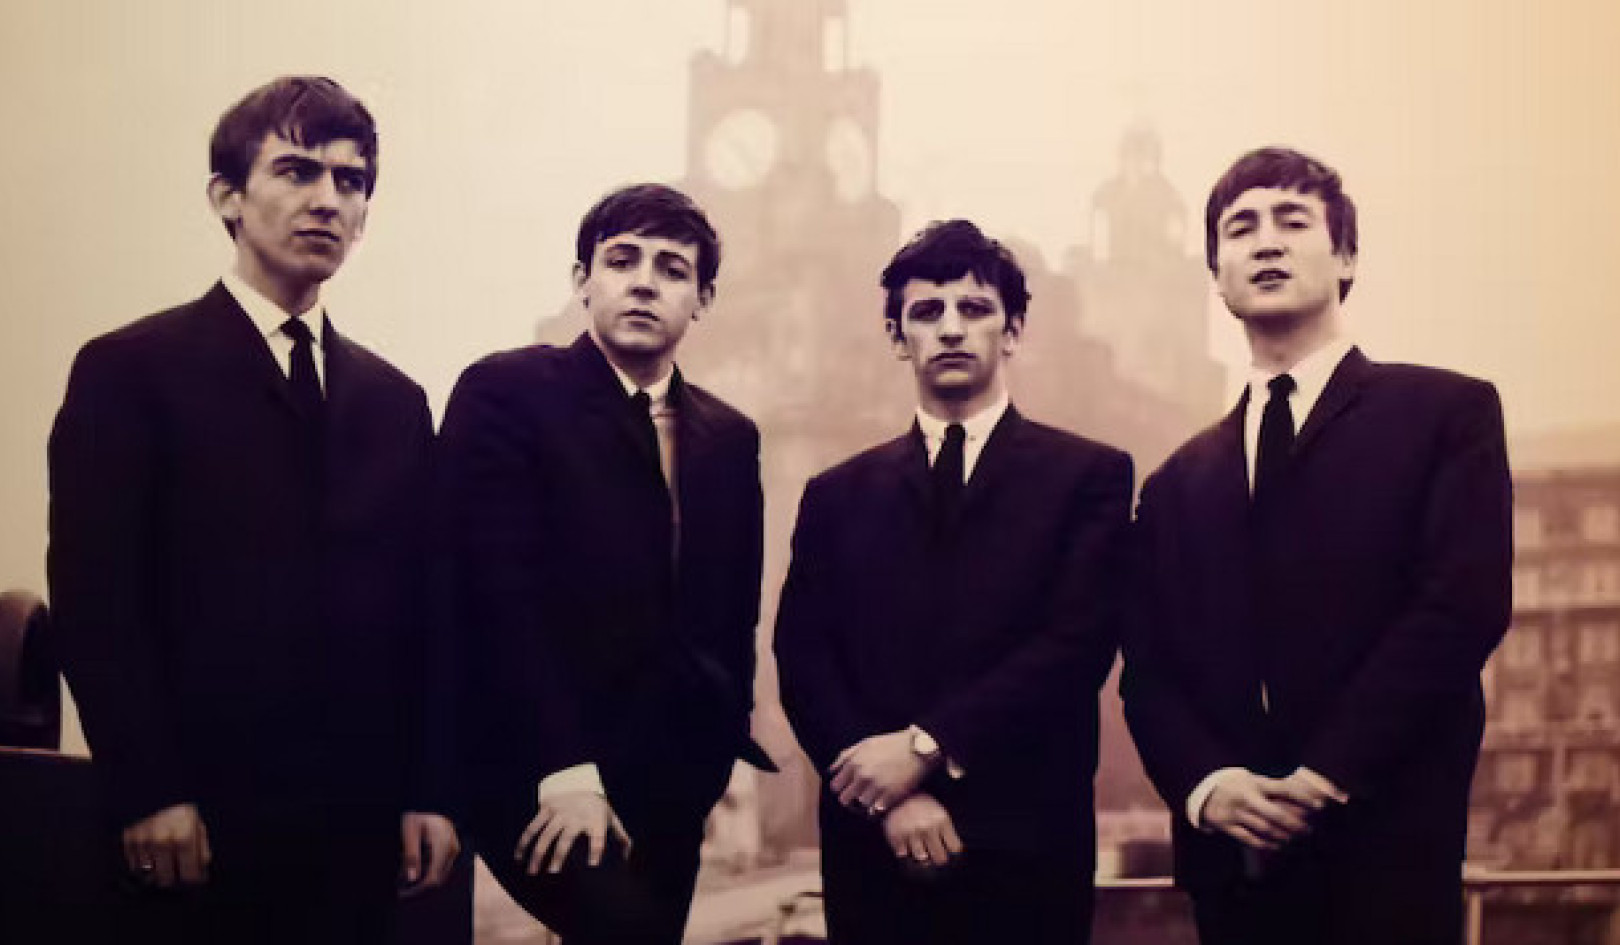 Beatles Yapay Zekayı Kucaklıyor: 'Şimdi ve Sonra' Geçmişle Bugünü Harmanlıyor